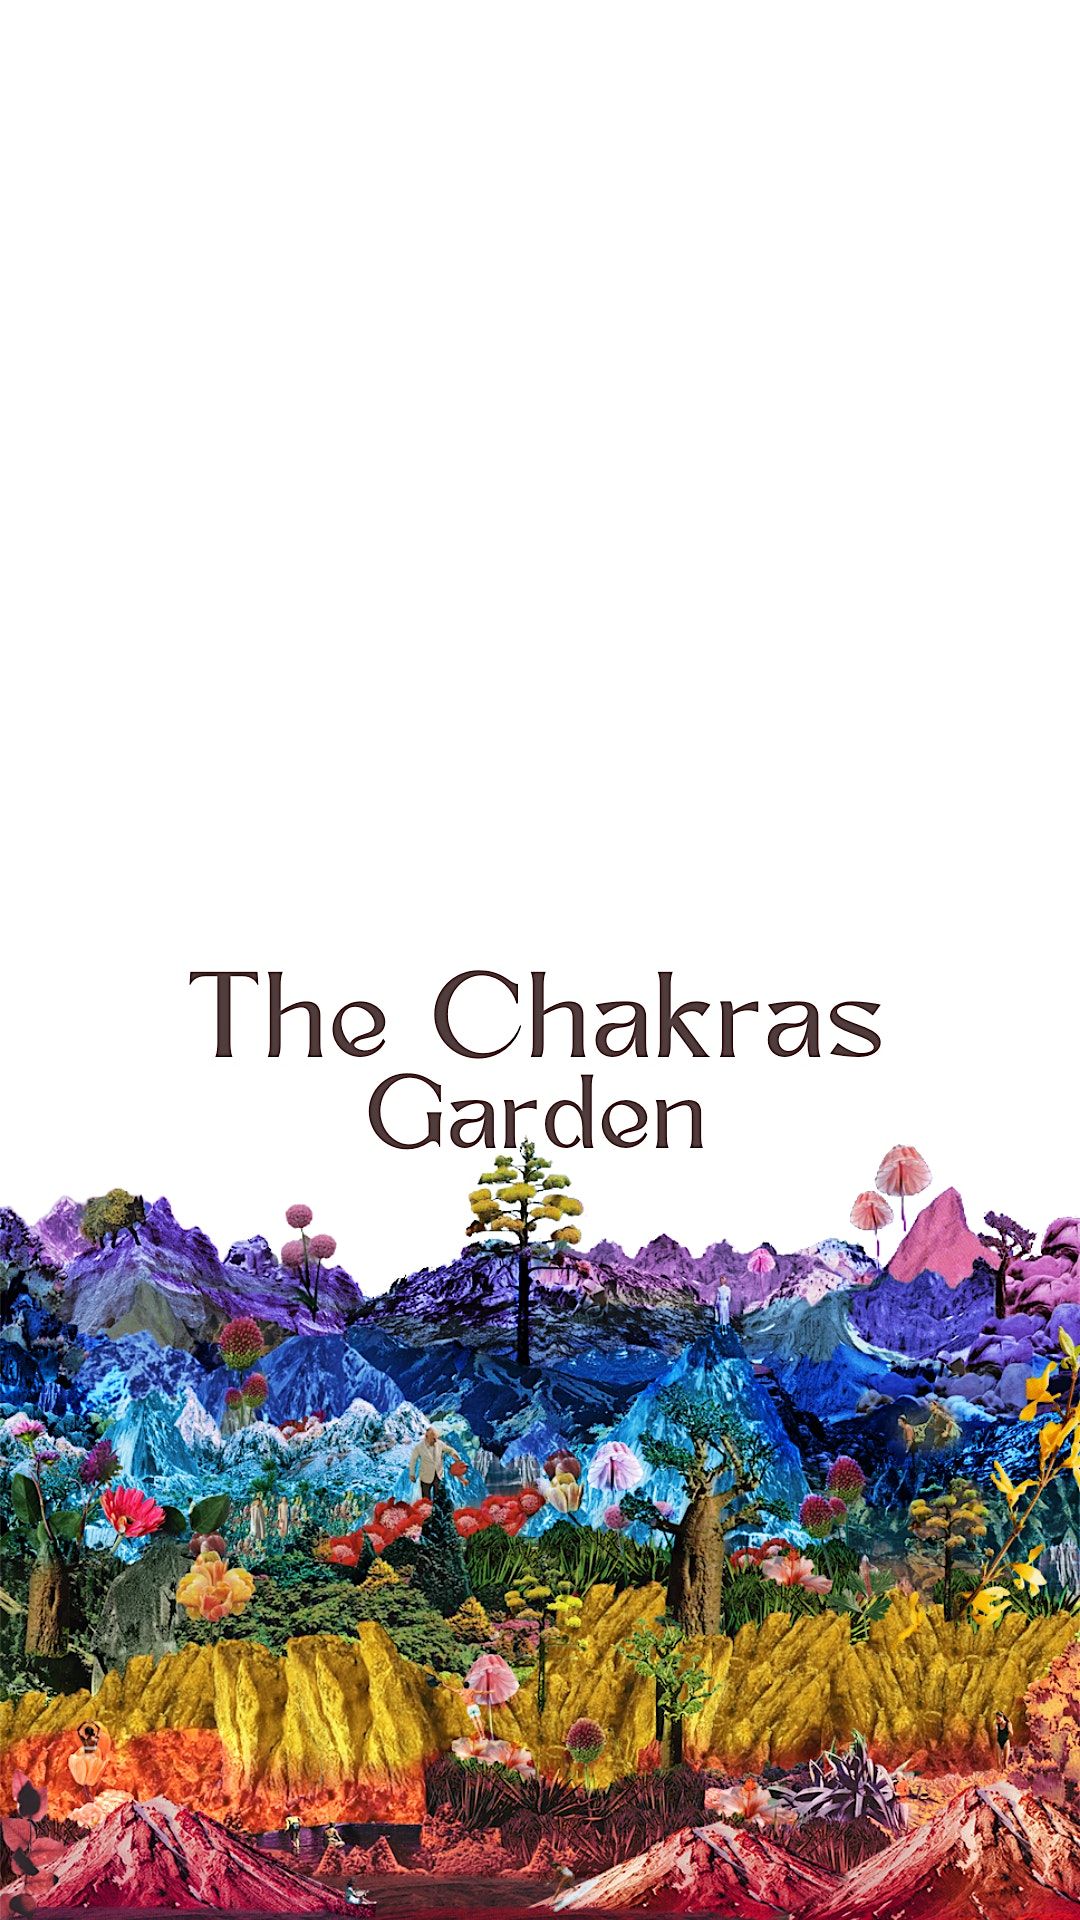 The Chakras Garden